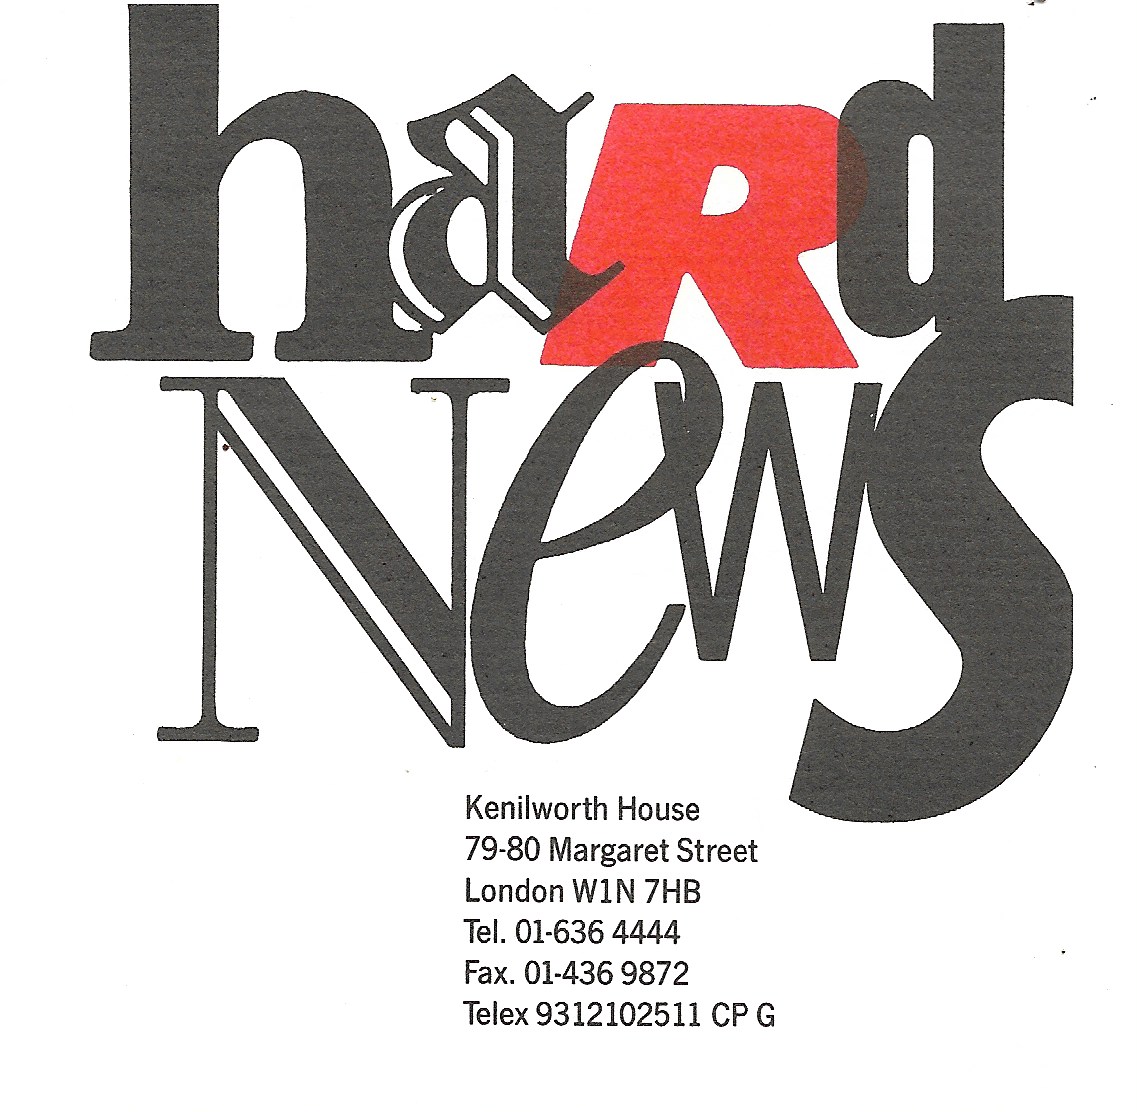 Hard News letterhead